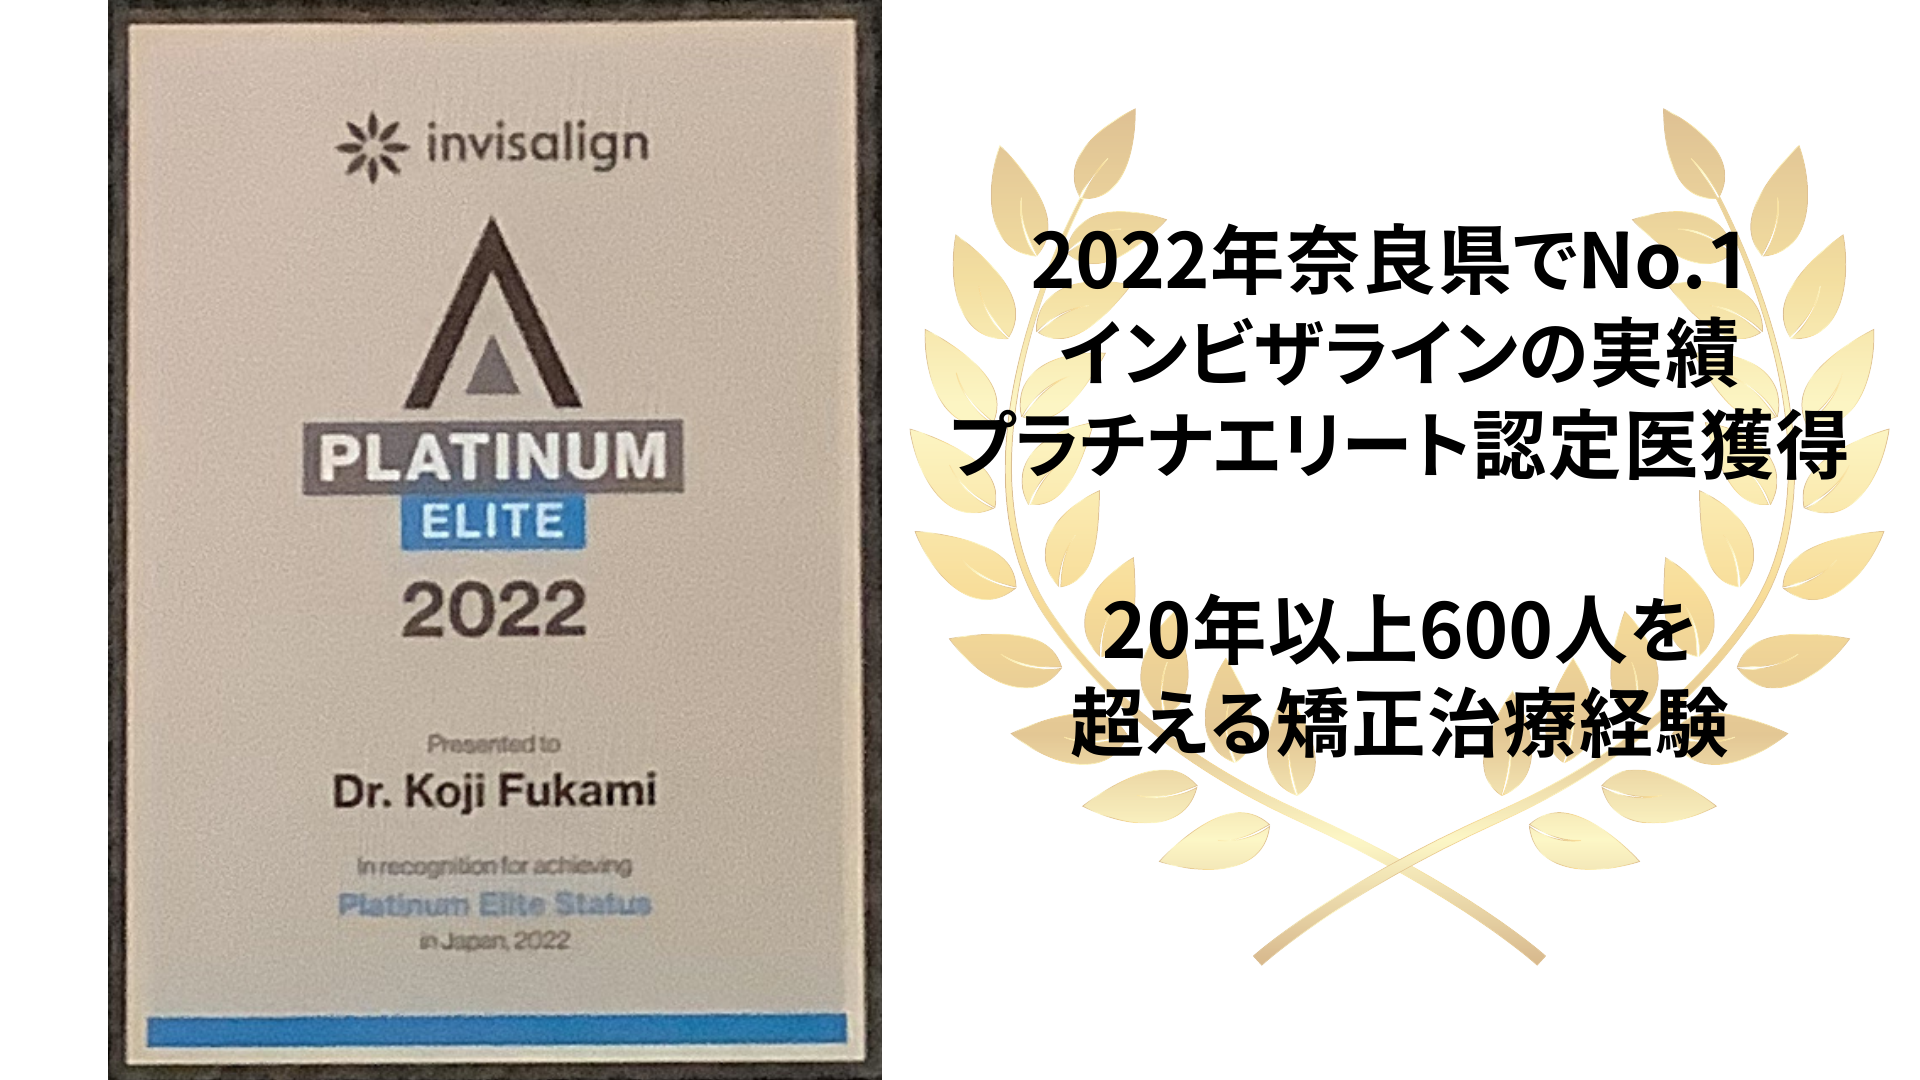 2022奈良県でNo.1インビザラインの実績